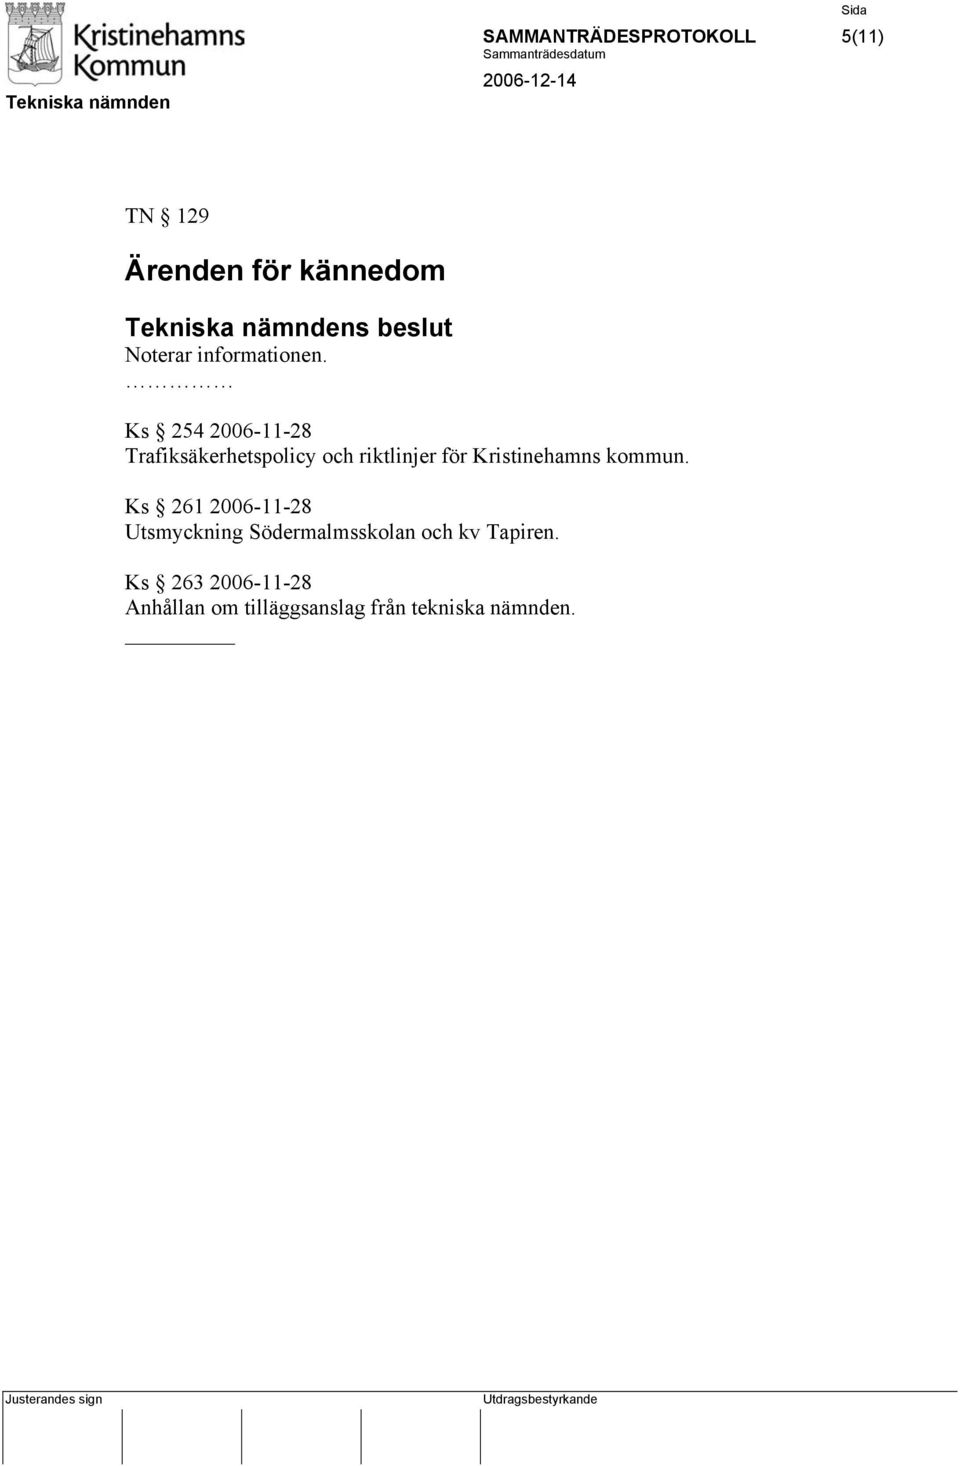 Ks 254 2006-11-28 Trafiksäkerhetspolicy och riktlinjer för Kristinehamns